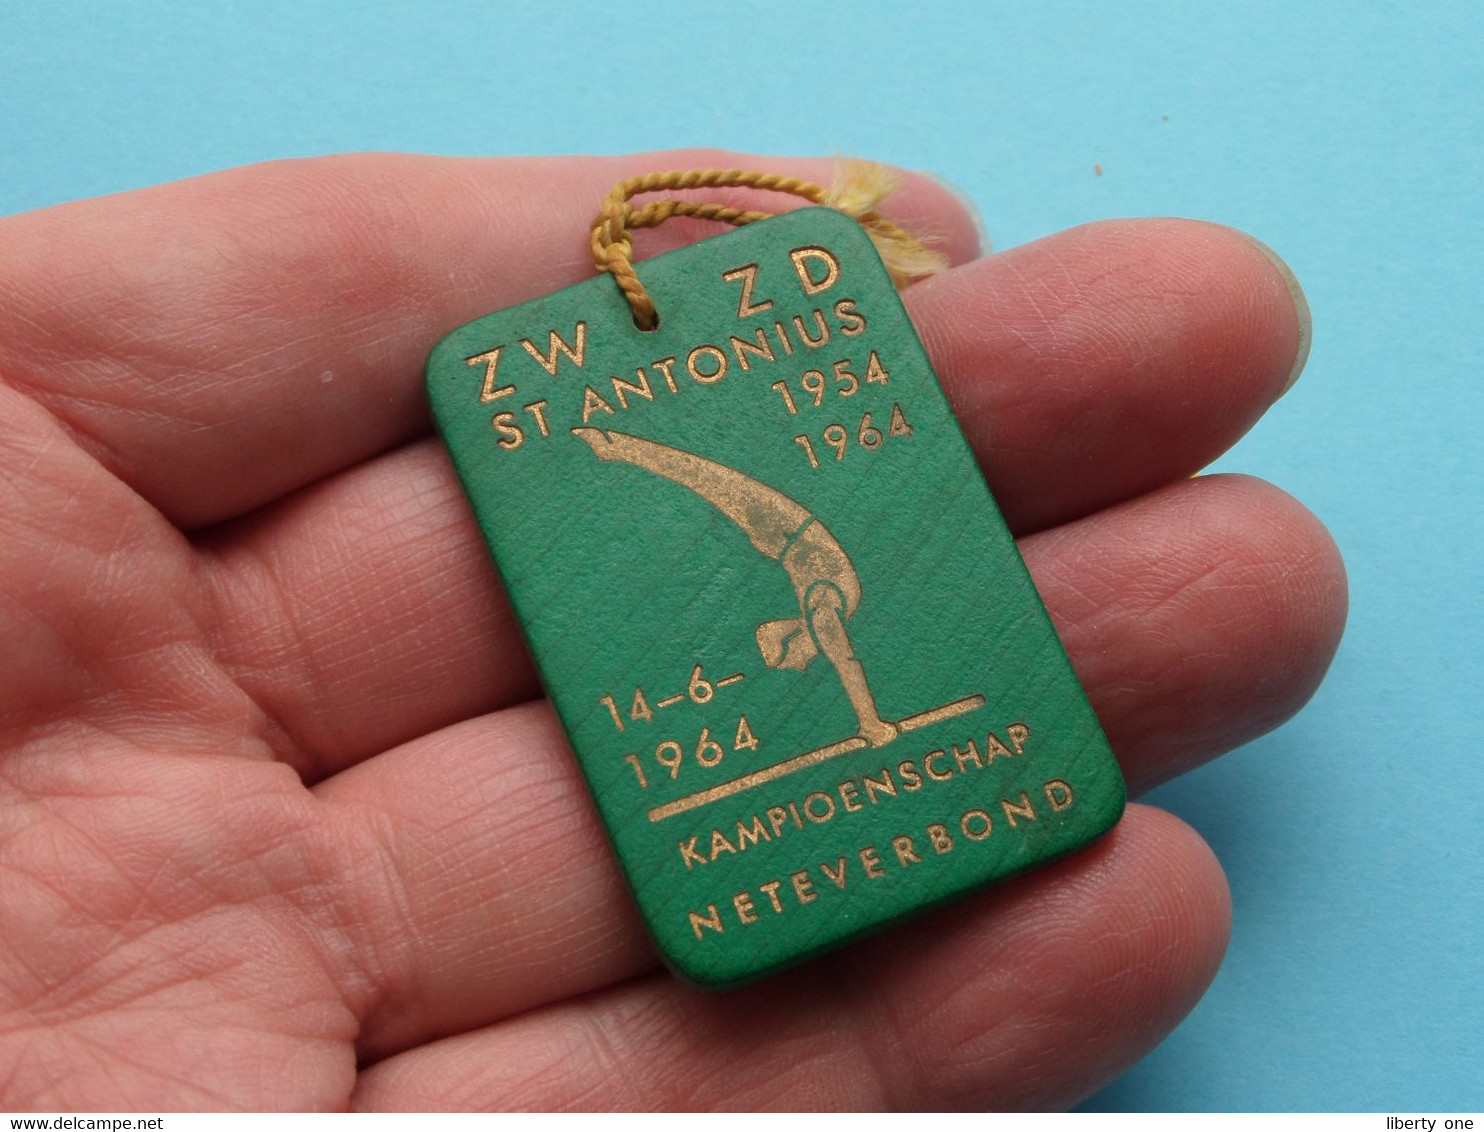 ZW ZD St. ANTONIUS 1954-1964 ( 14-6-1964 ) Kampioenschap NETEVERBOND ( Plaatje In Plastiek > Zie Foto's ) - Gymnastics